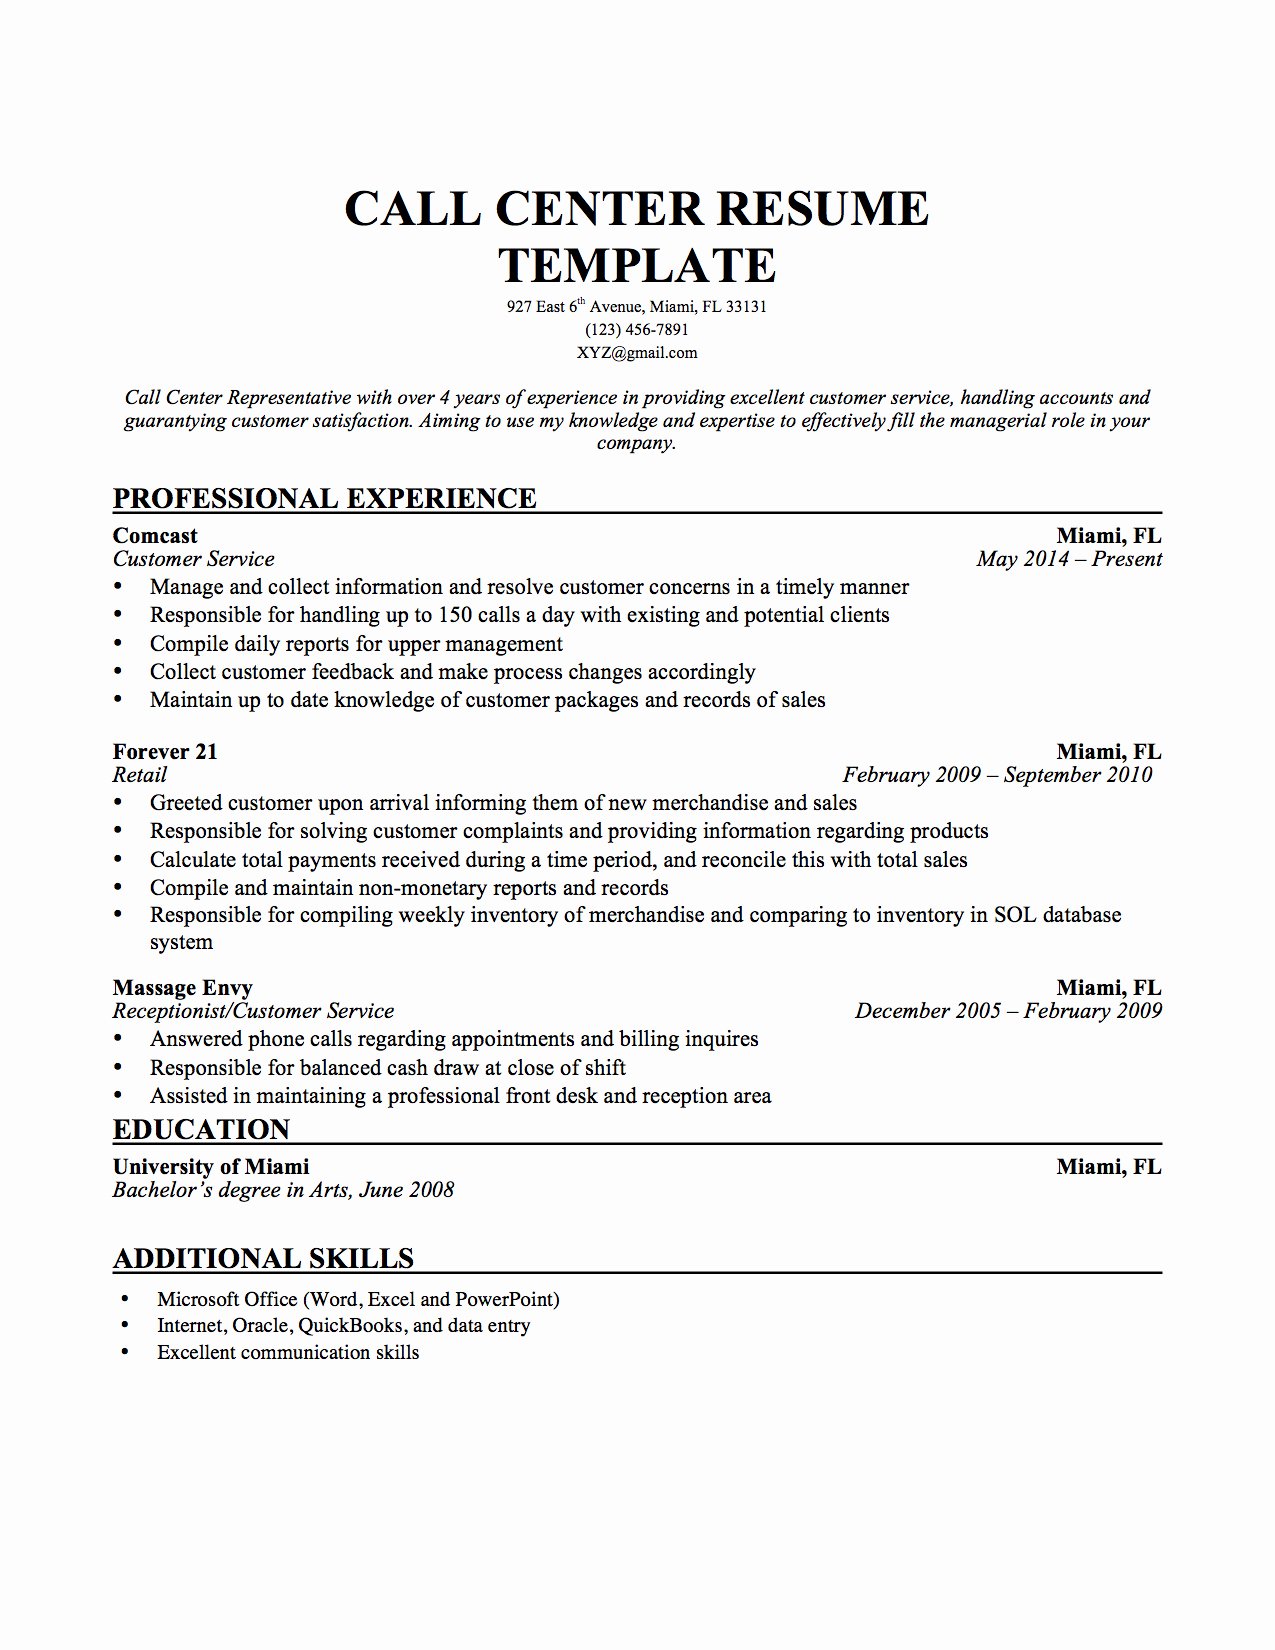 Sample Resume for Call Center Jobs Bongdaao